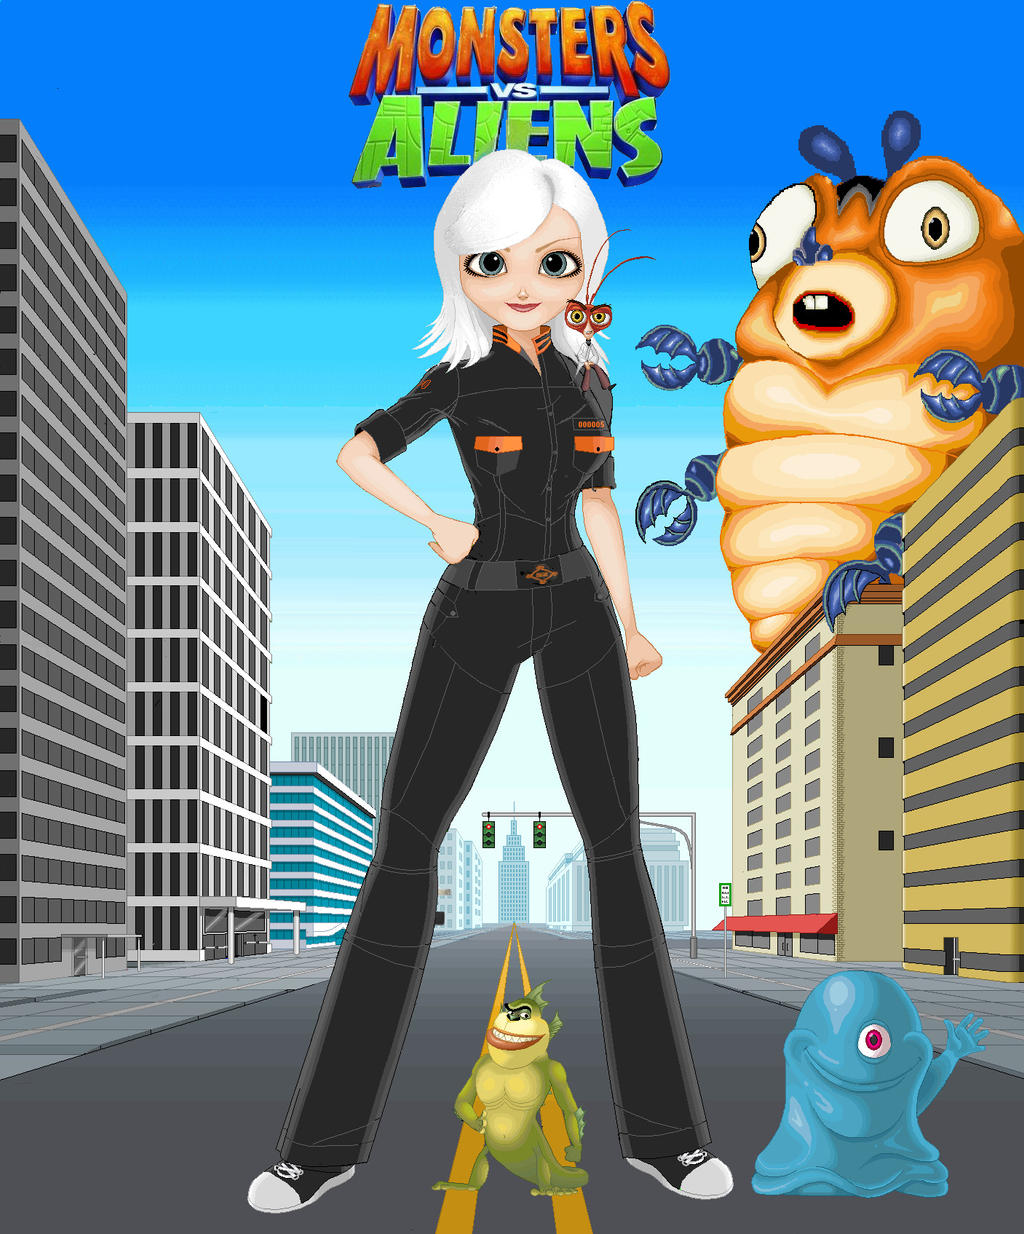 Blog: Monsters vs Aliens (4/16/09)